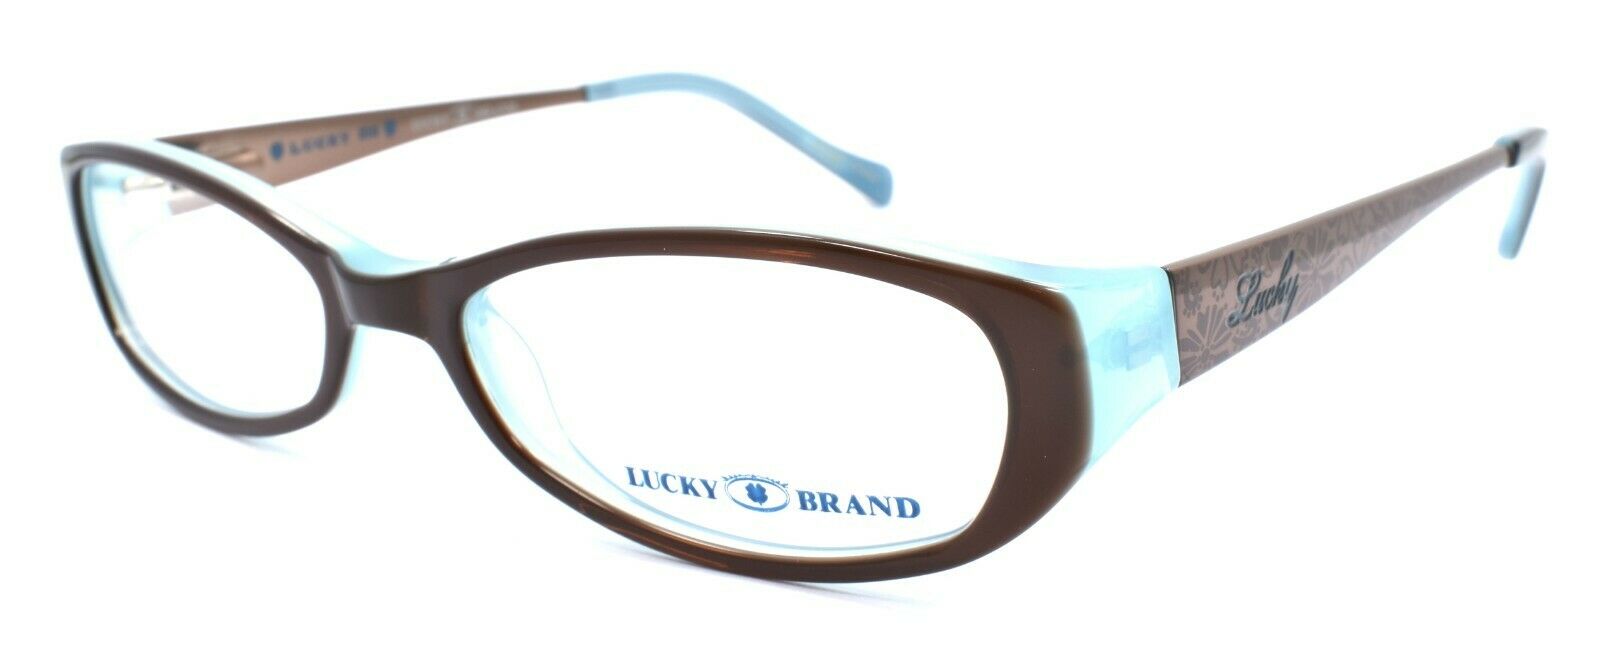 1-LUCKY BRAND Beach Trip Kids Girls Eyeglasses Frames 46-15-130 Brown + CASE-751286214925-IKSpecs